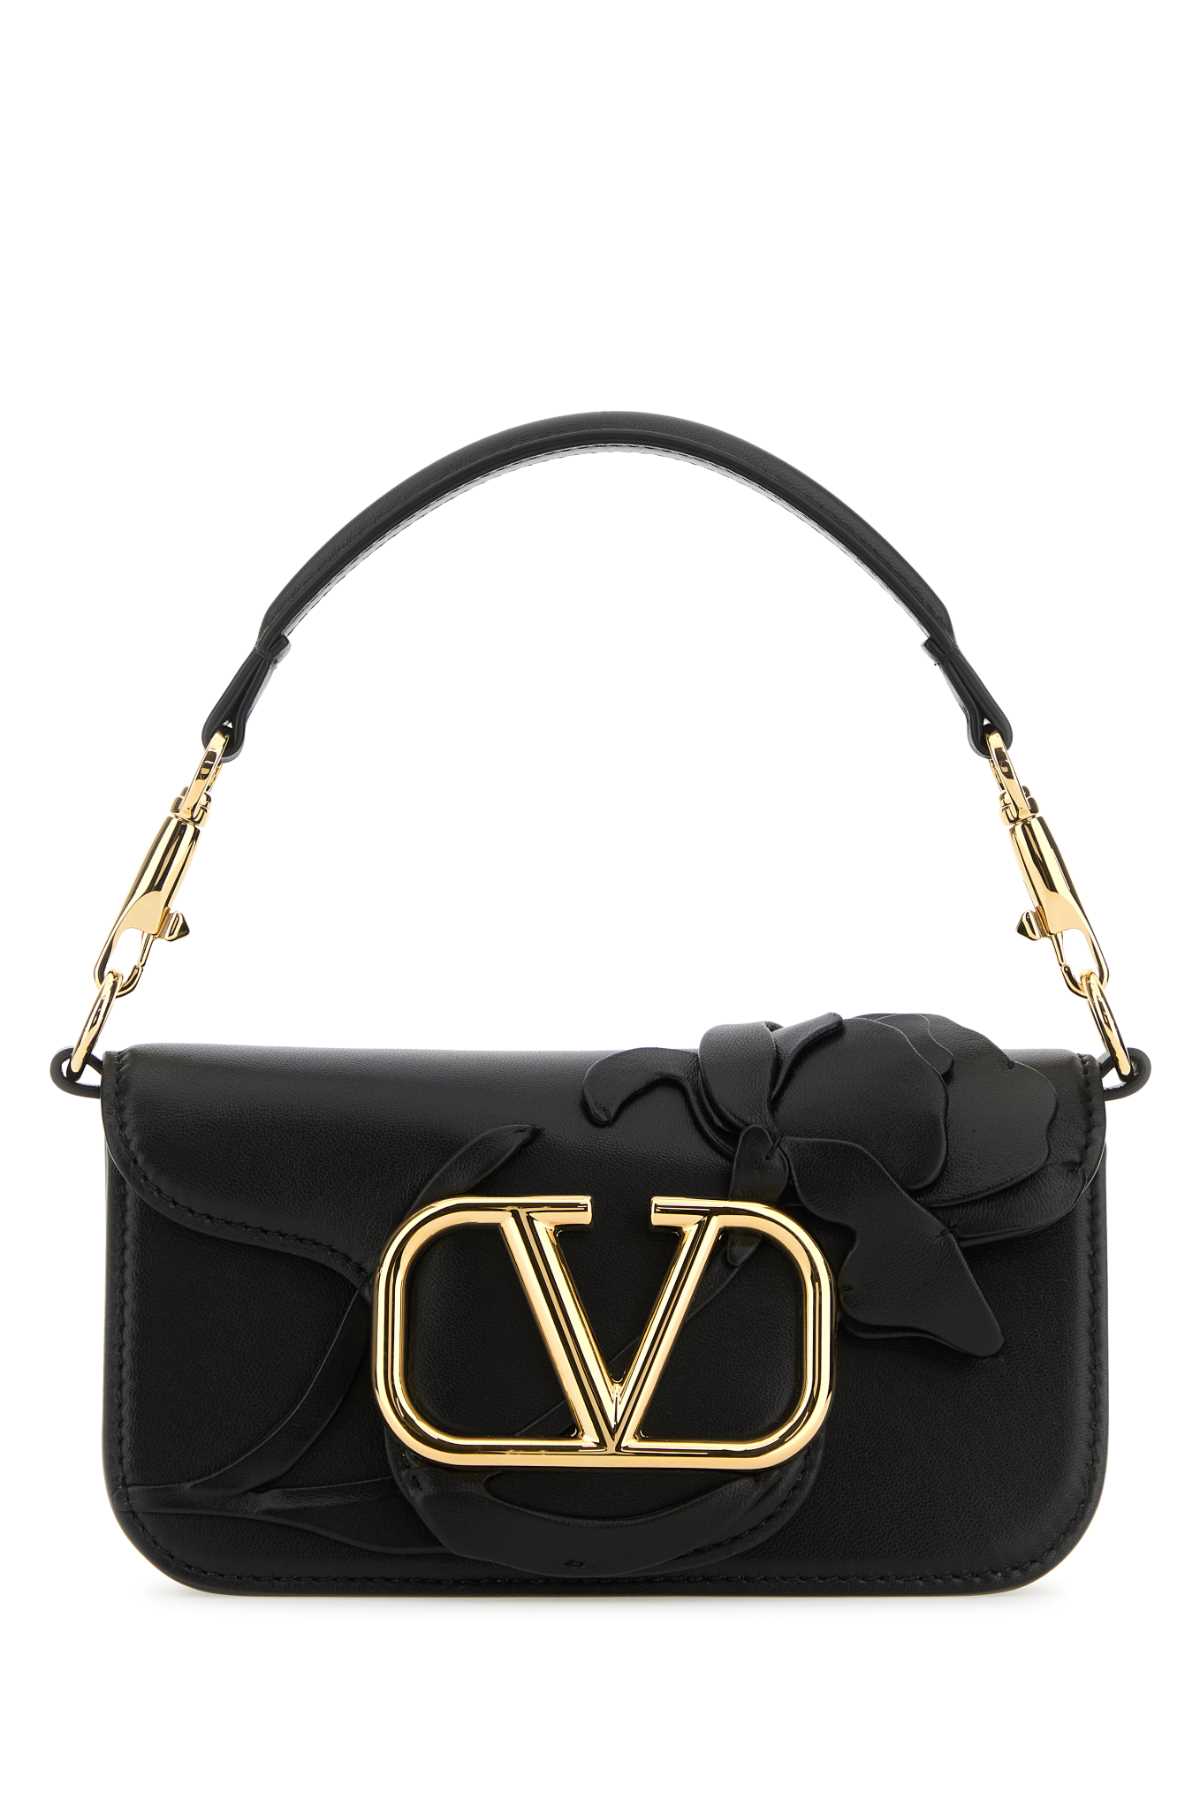 Valentino Garavani Black Leather Locã² Small Handbag In Nero